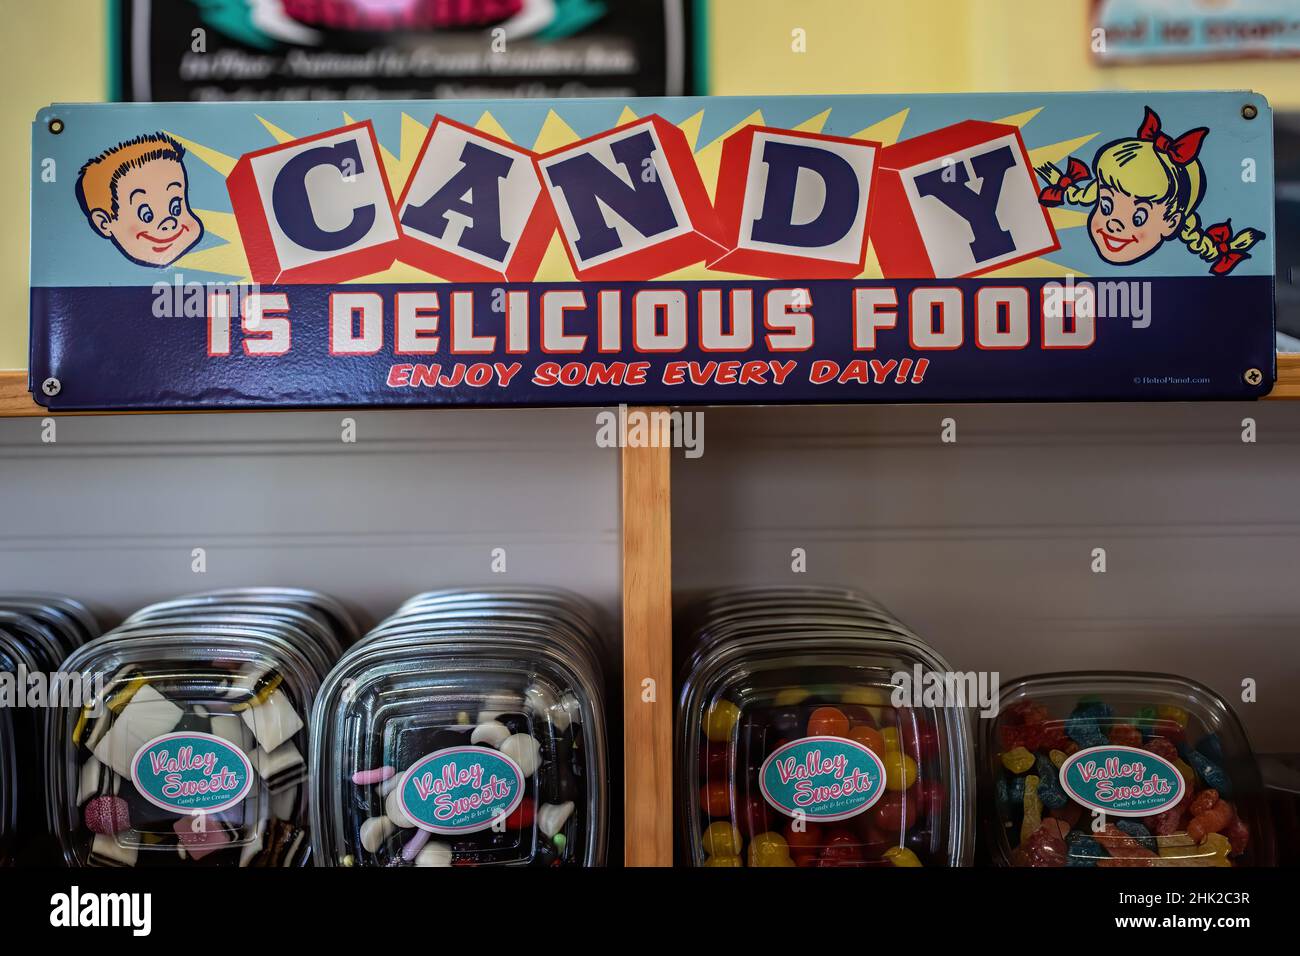 Candy è un delizioso cartello di cibo presso un negozio di gelati e caramelle, Valley Sweets Ice Cream and Candy. Foto Stock